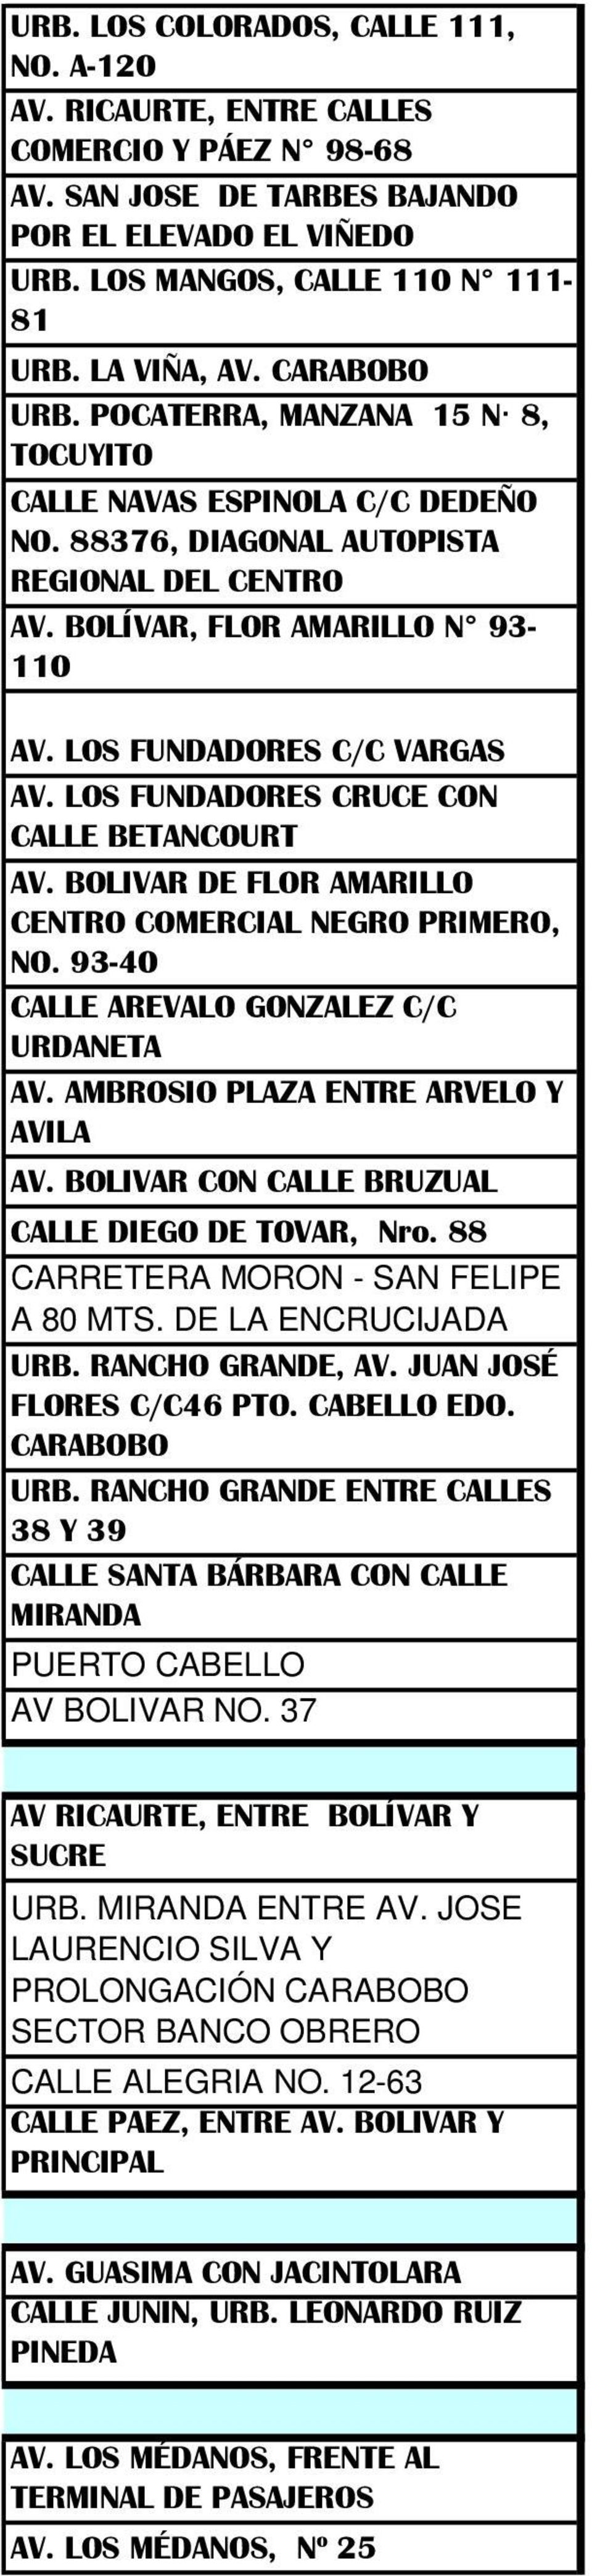 LOS FUNDADORES C/C VARGAS AV. LOS FUNDADORES CRUCE CON CALLE BETANCOURT AV. BOLIVAR DE FLOR AMARILLO CENTRO COMERCIAL NEGRO PRIMERO, NO. 93-40 CALLE AREVALO GONZALEZ C/C URDANETA AV.